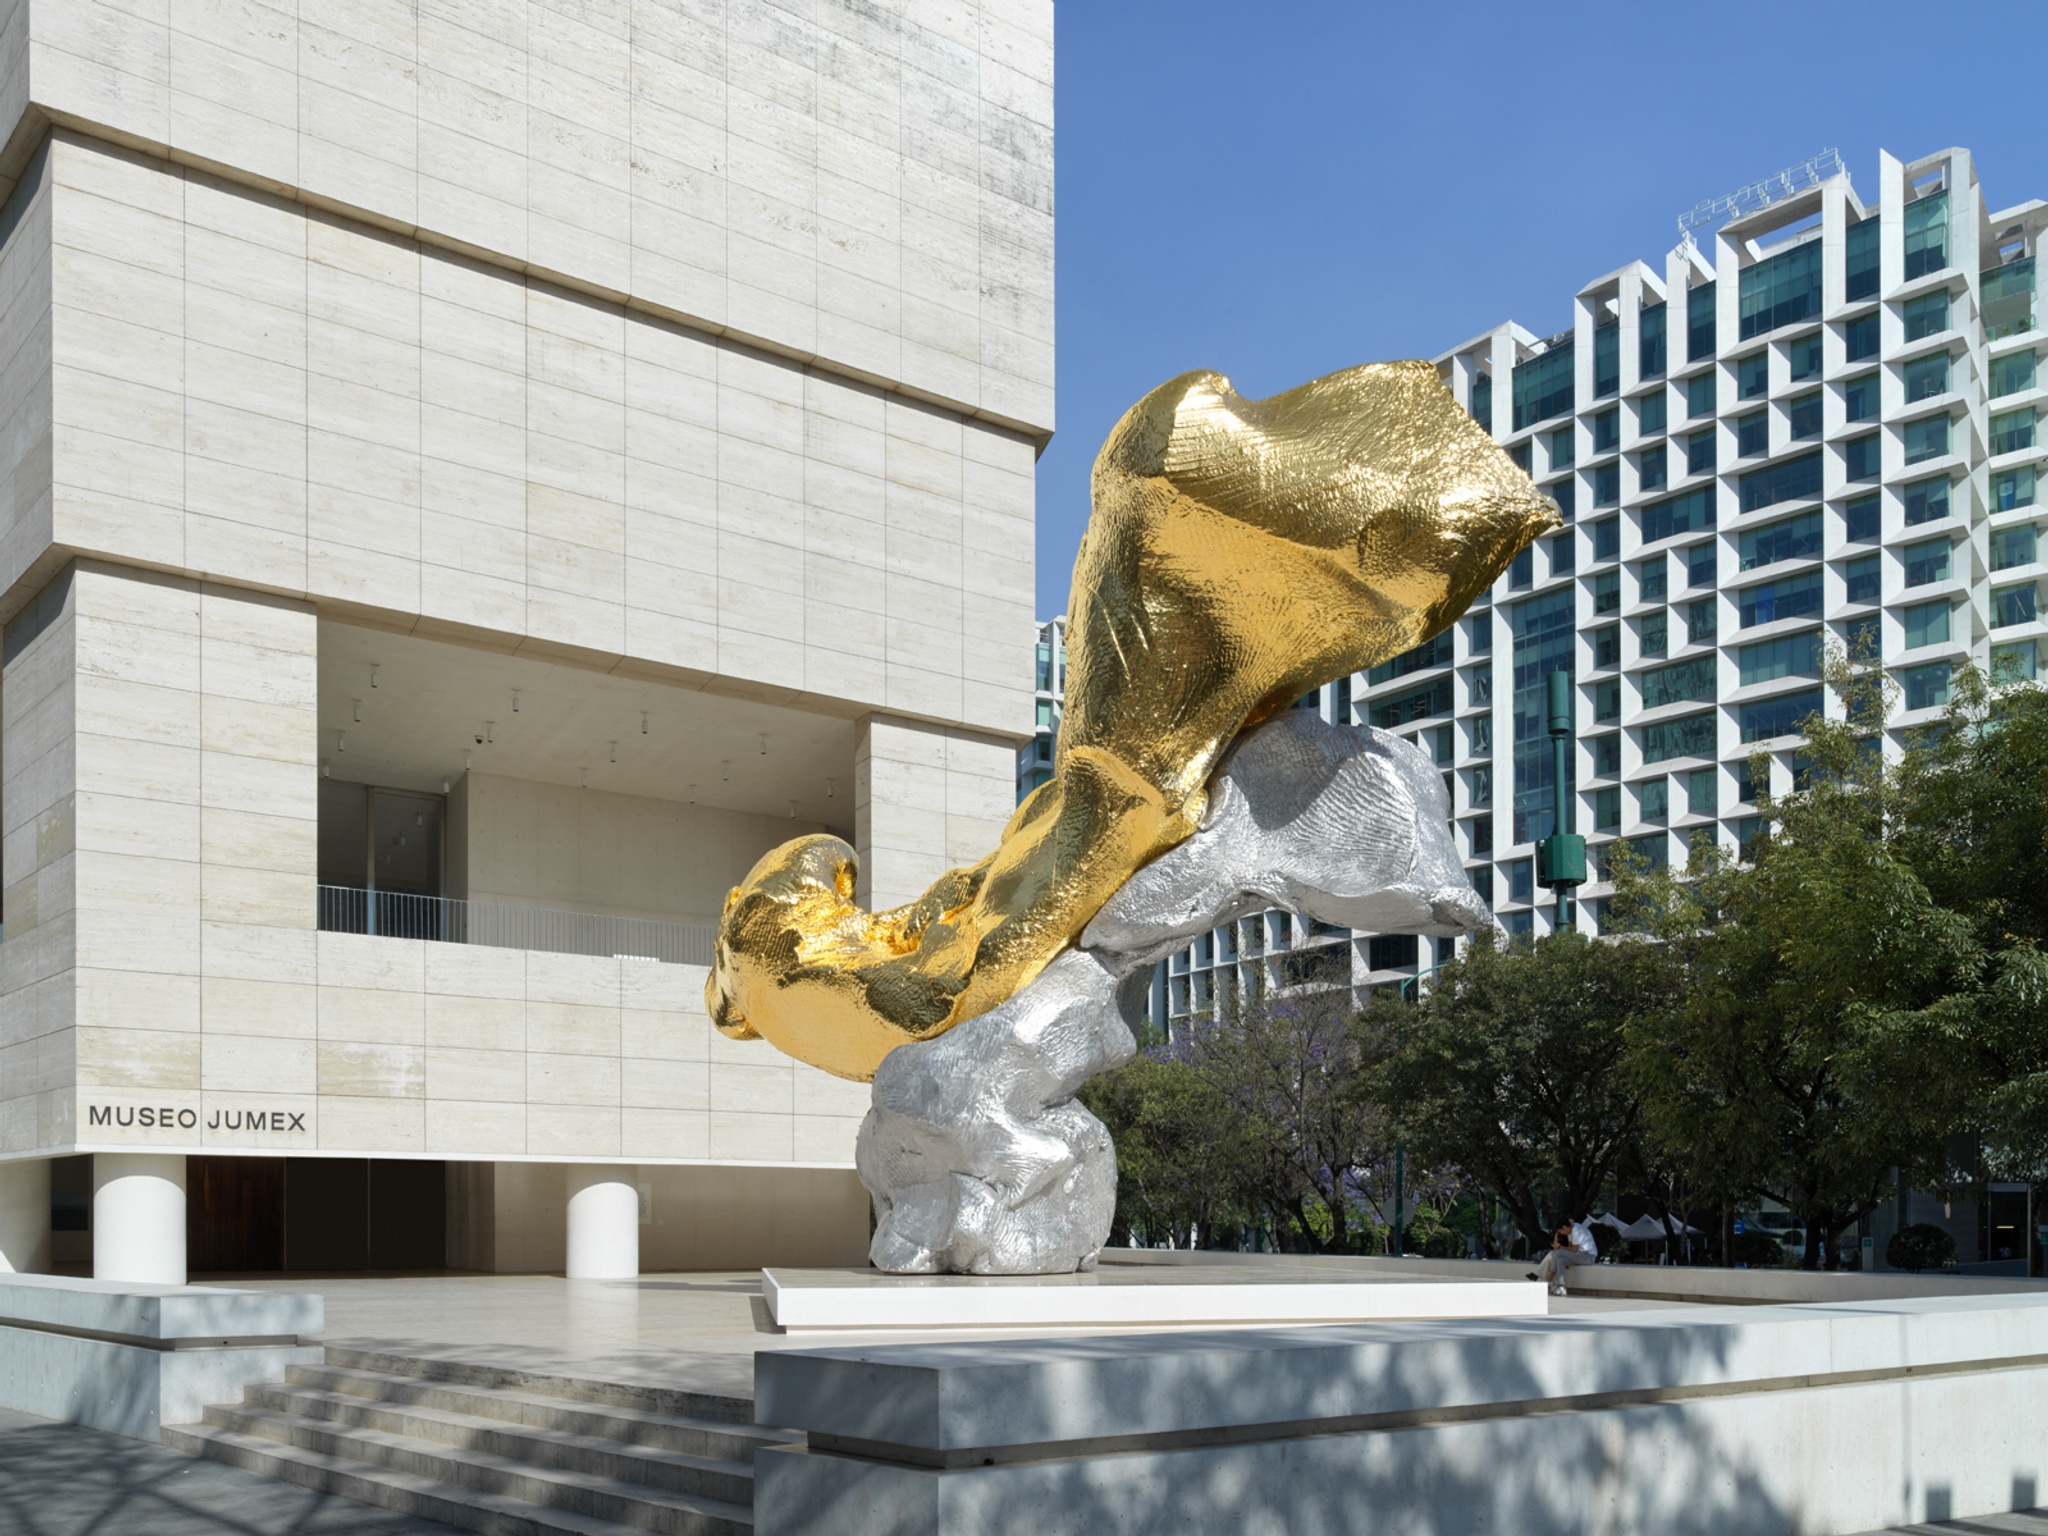  Exterior del museo Jumex, donde enfrente de la entrada hay una gran escultura moderna, de forma irregular color dorada